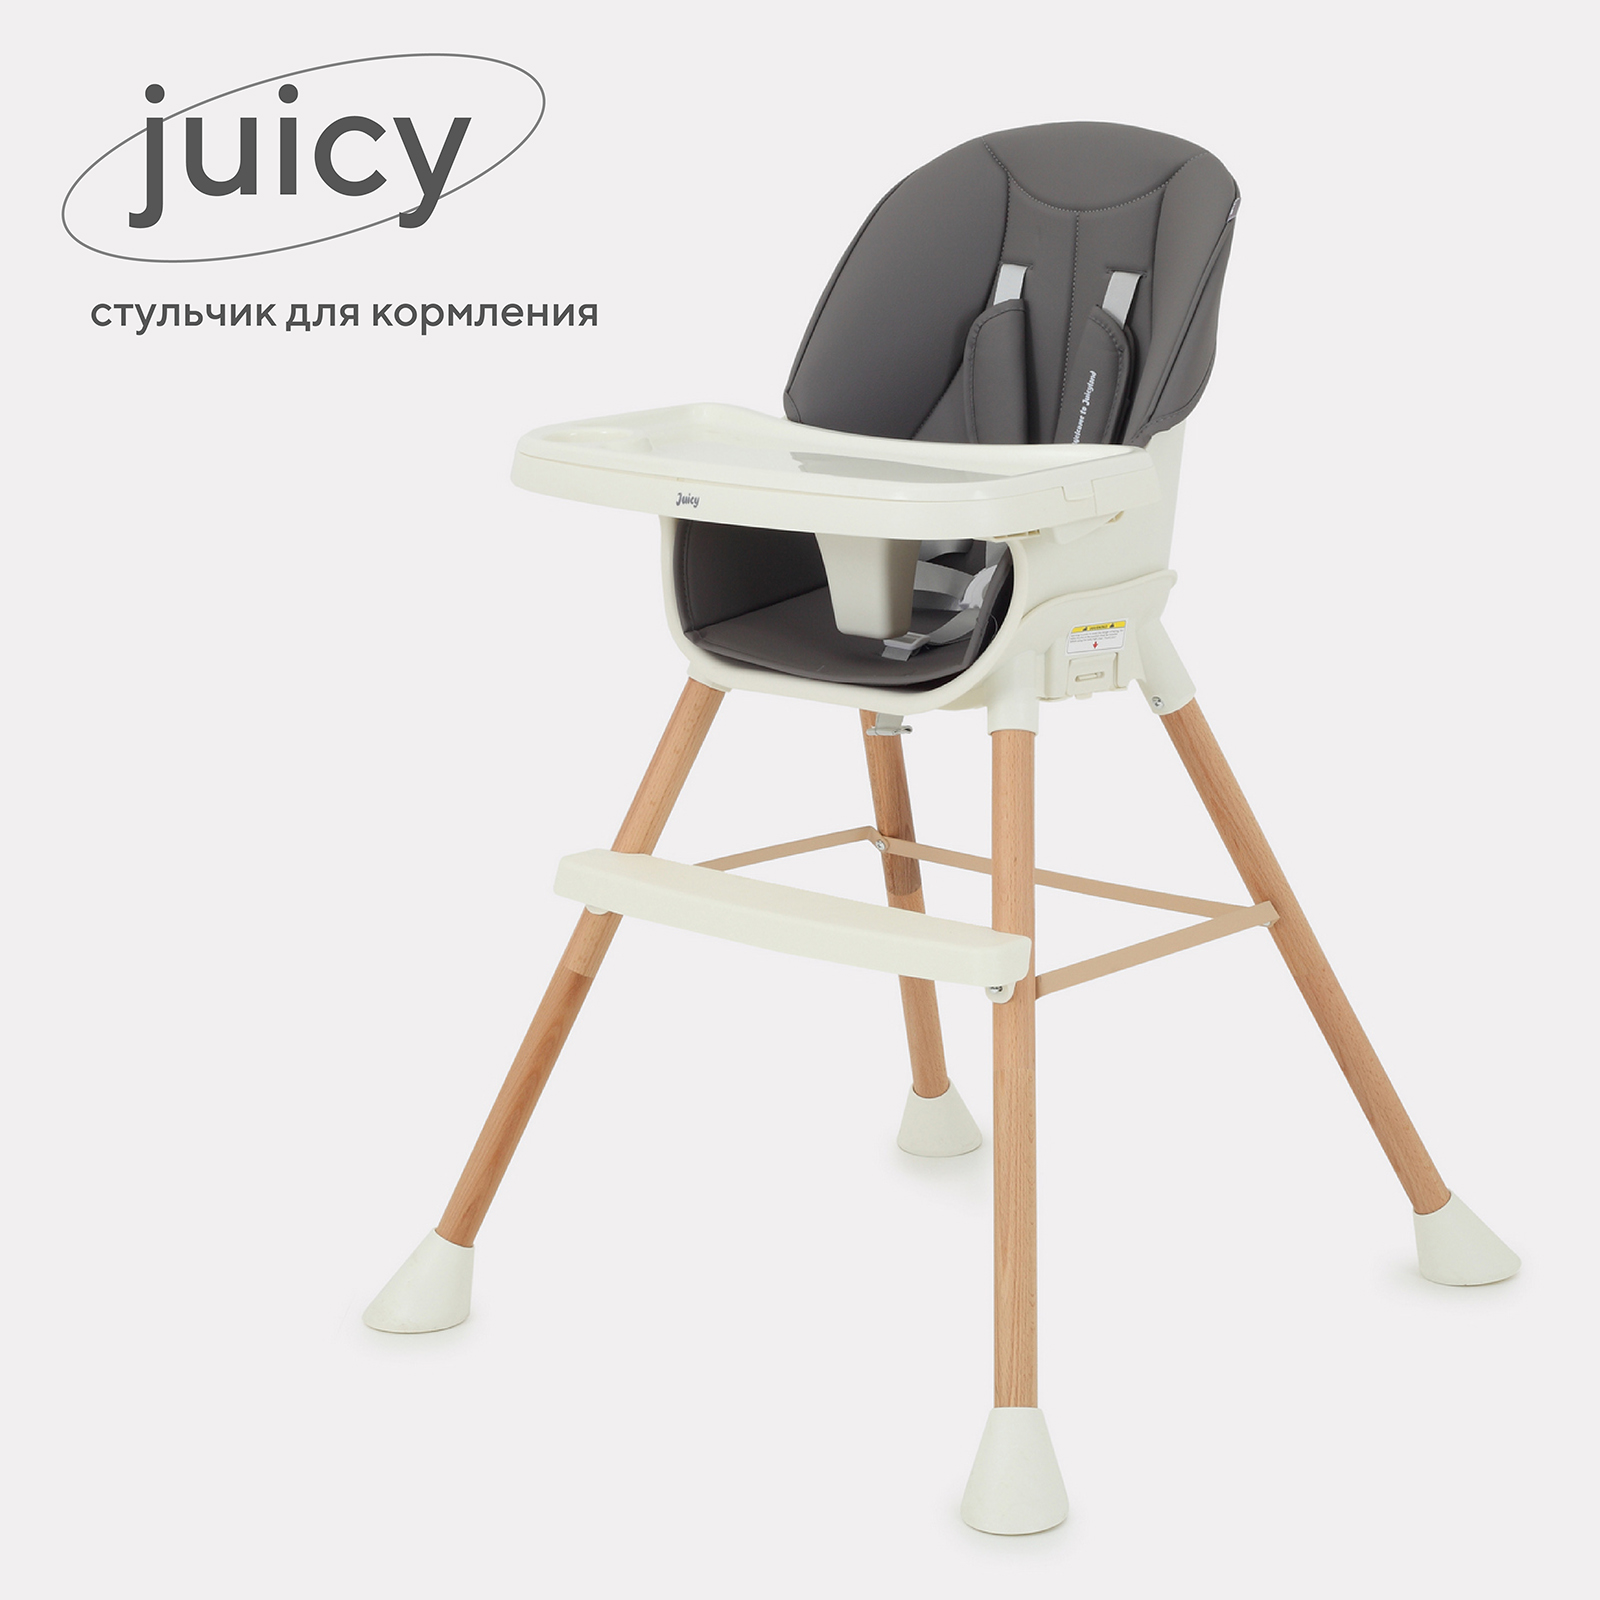 Стульчик для кормления RANT Juicy RH160 Wood grey стульчик для кормления lionelo lo linn plus grey